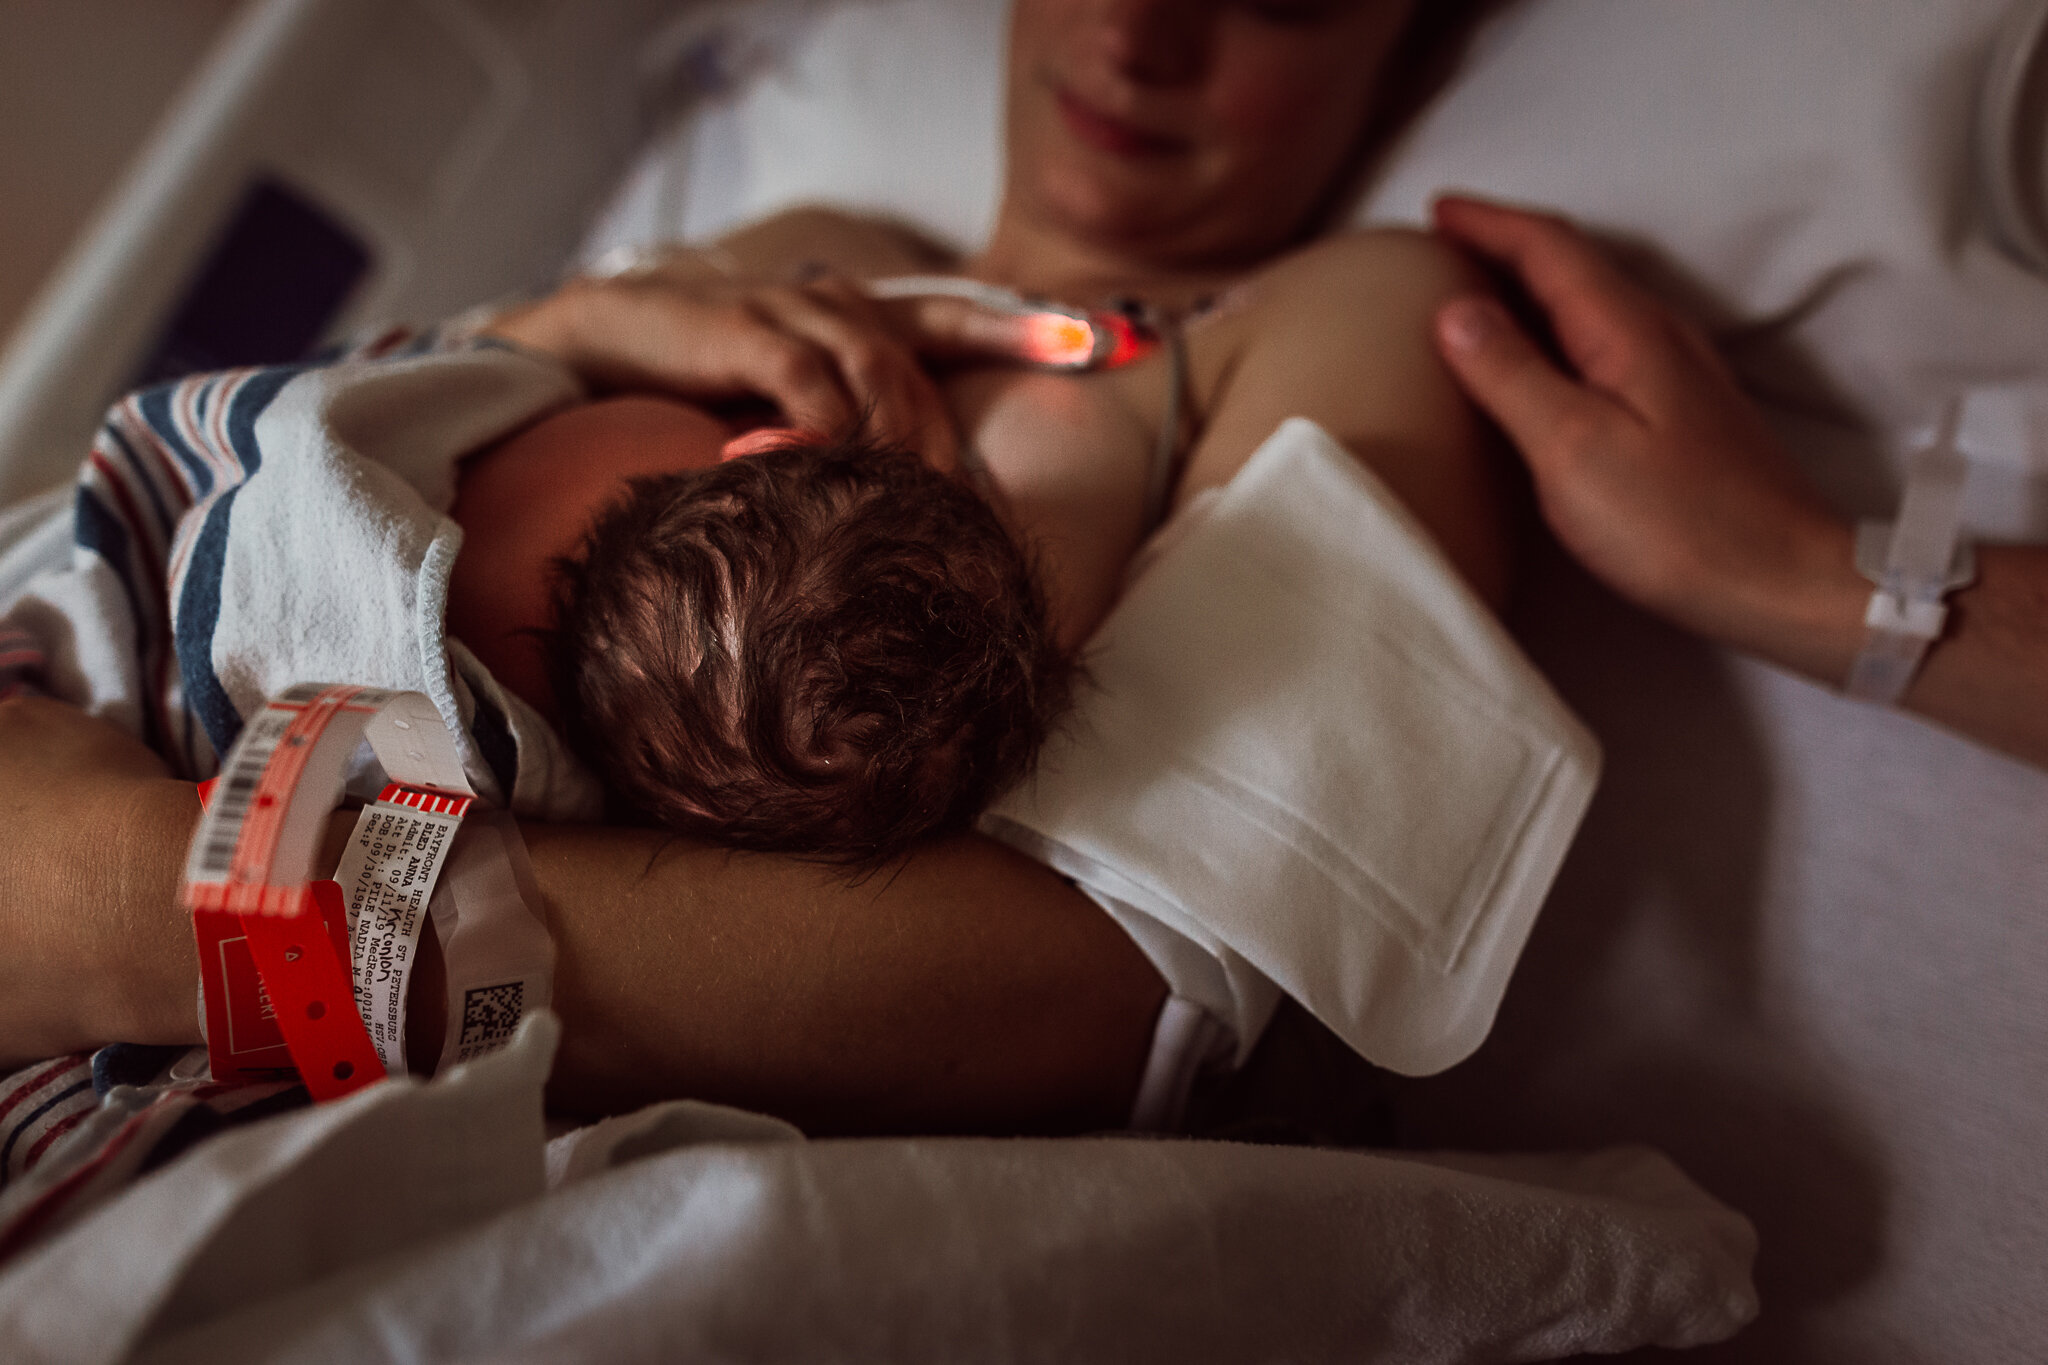 cesarean-birth-postpartum-maggie-williams-3944.jpg